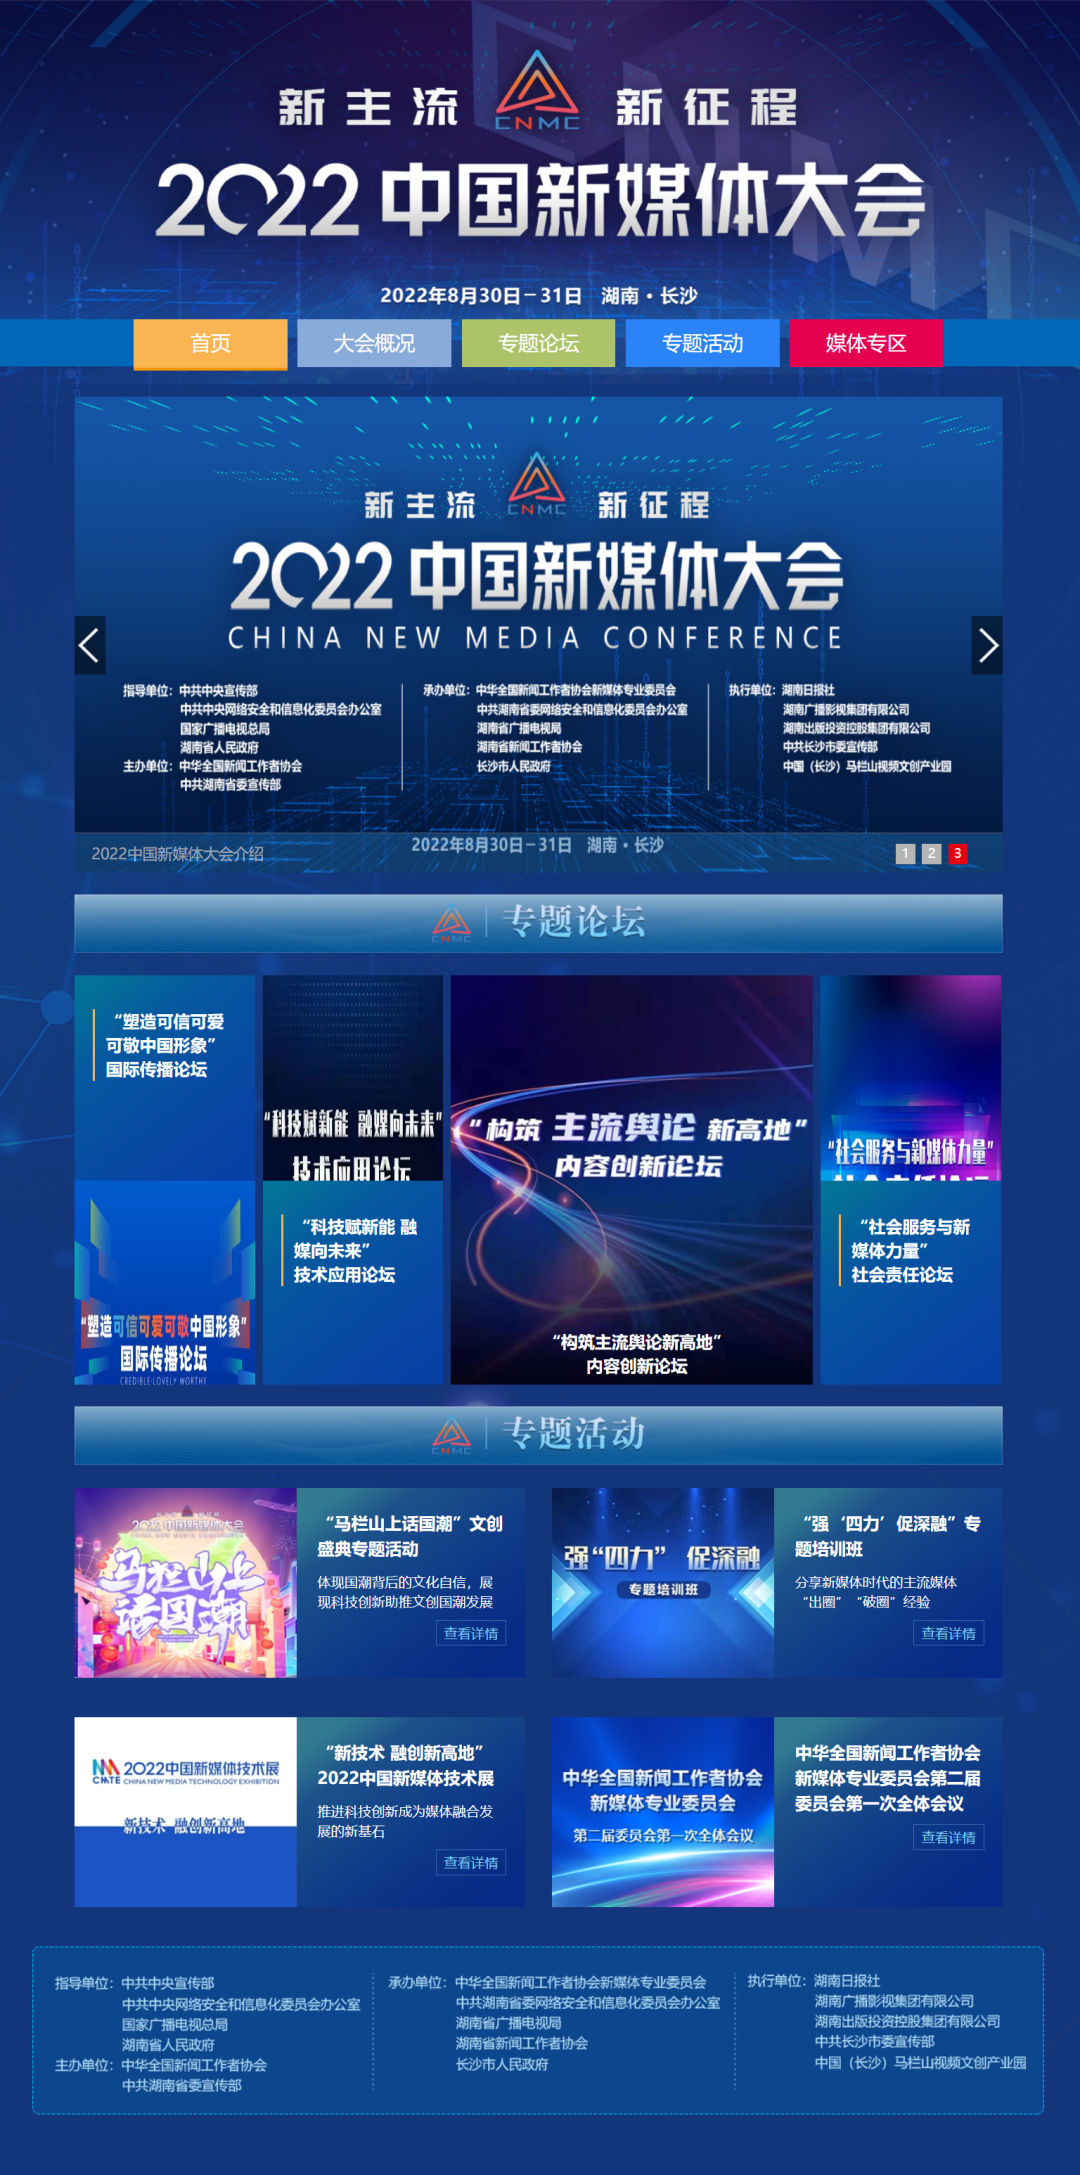 2022中国新媒体大会官网上线